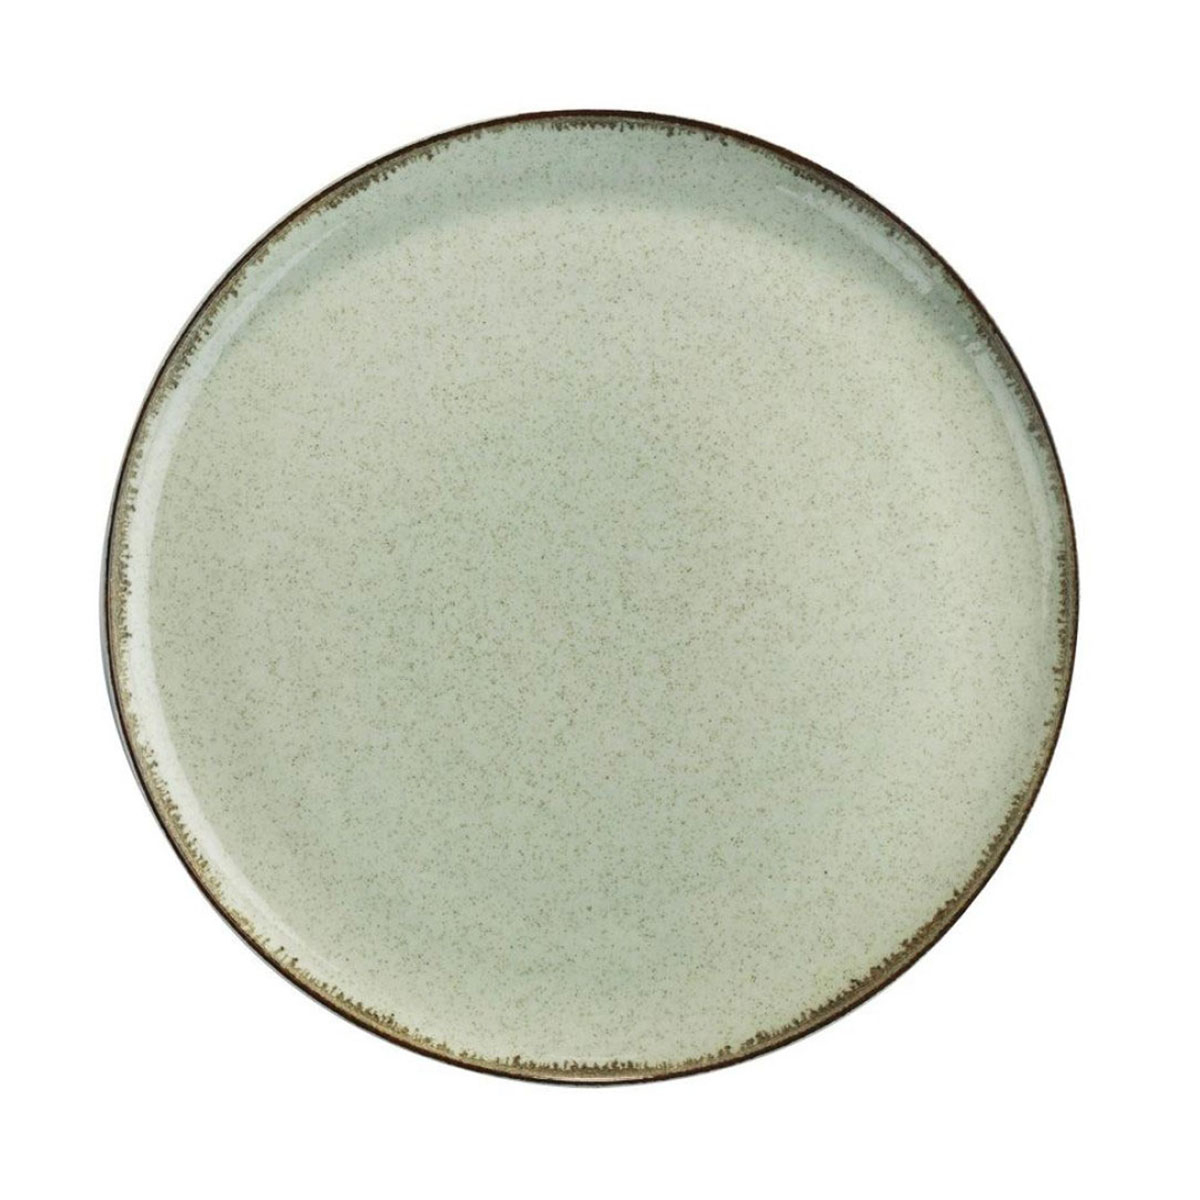 Πιάτο Φαγητού Ρηχό (Φ27) Kutahya Porselen Mood-P03 Green